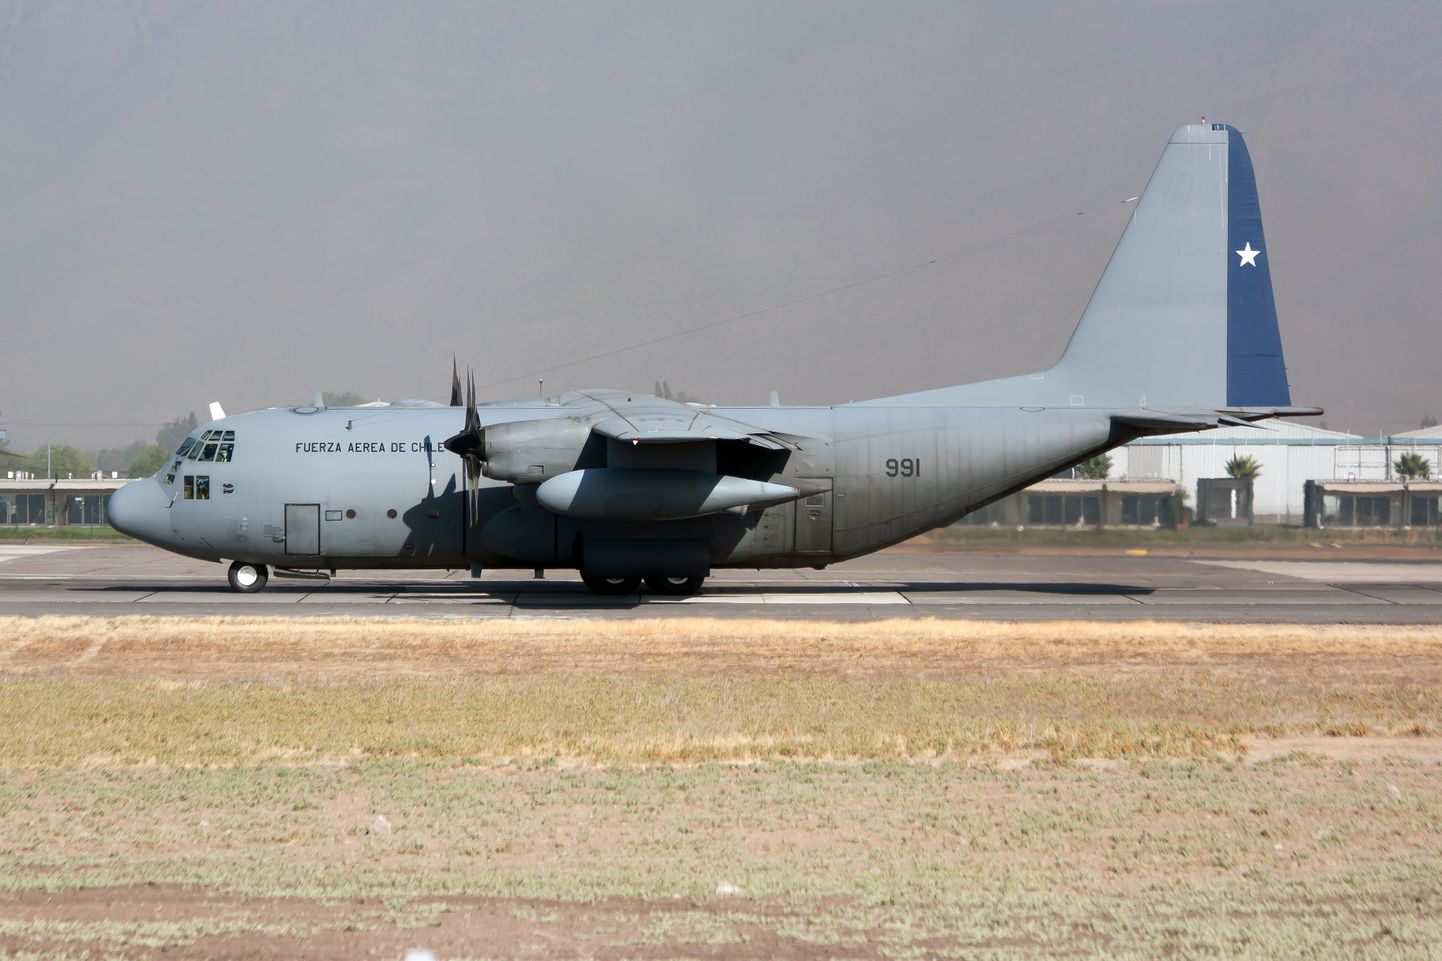 Lennuk Lockheed C-130 Hercules.